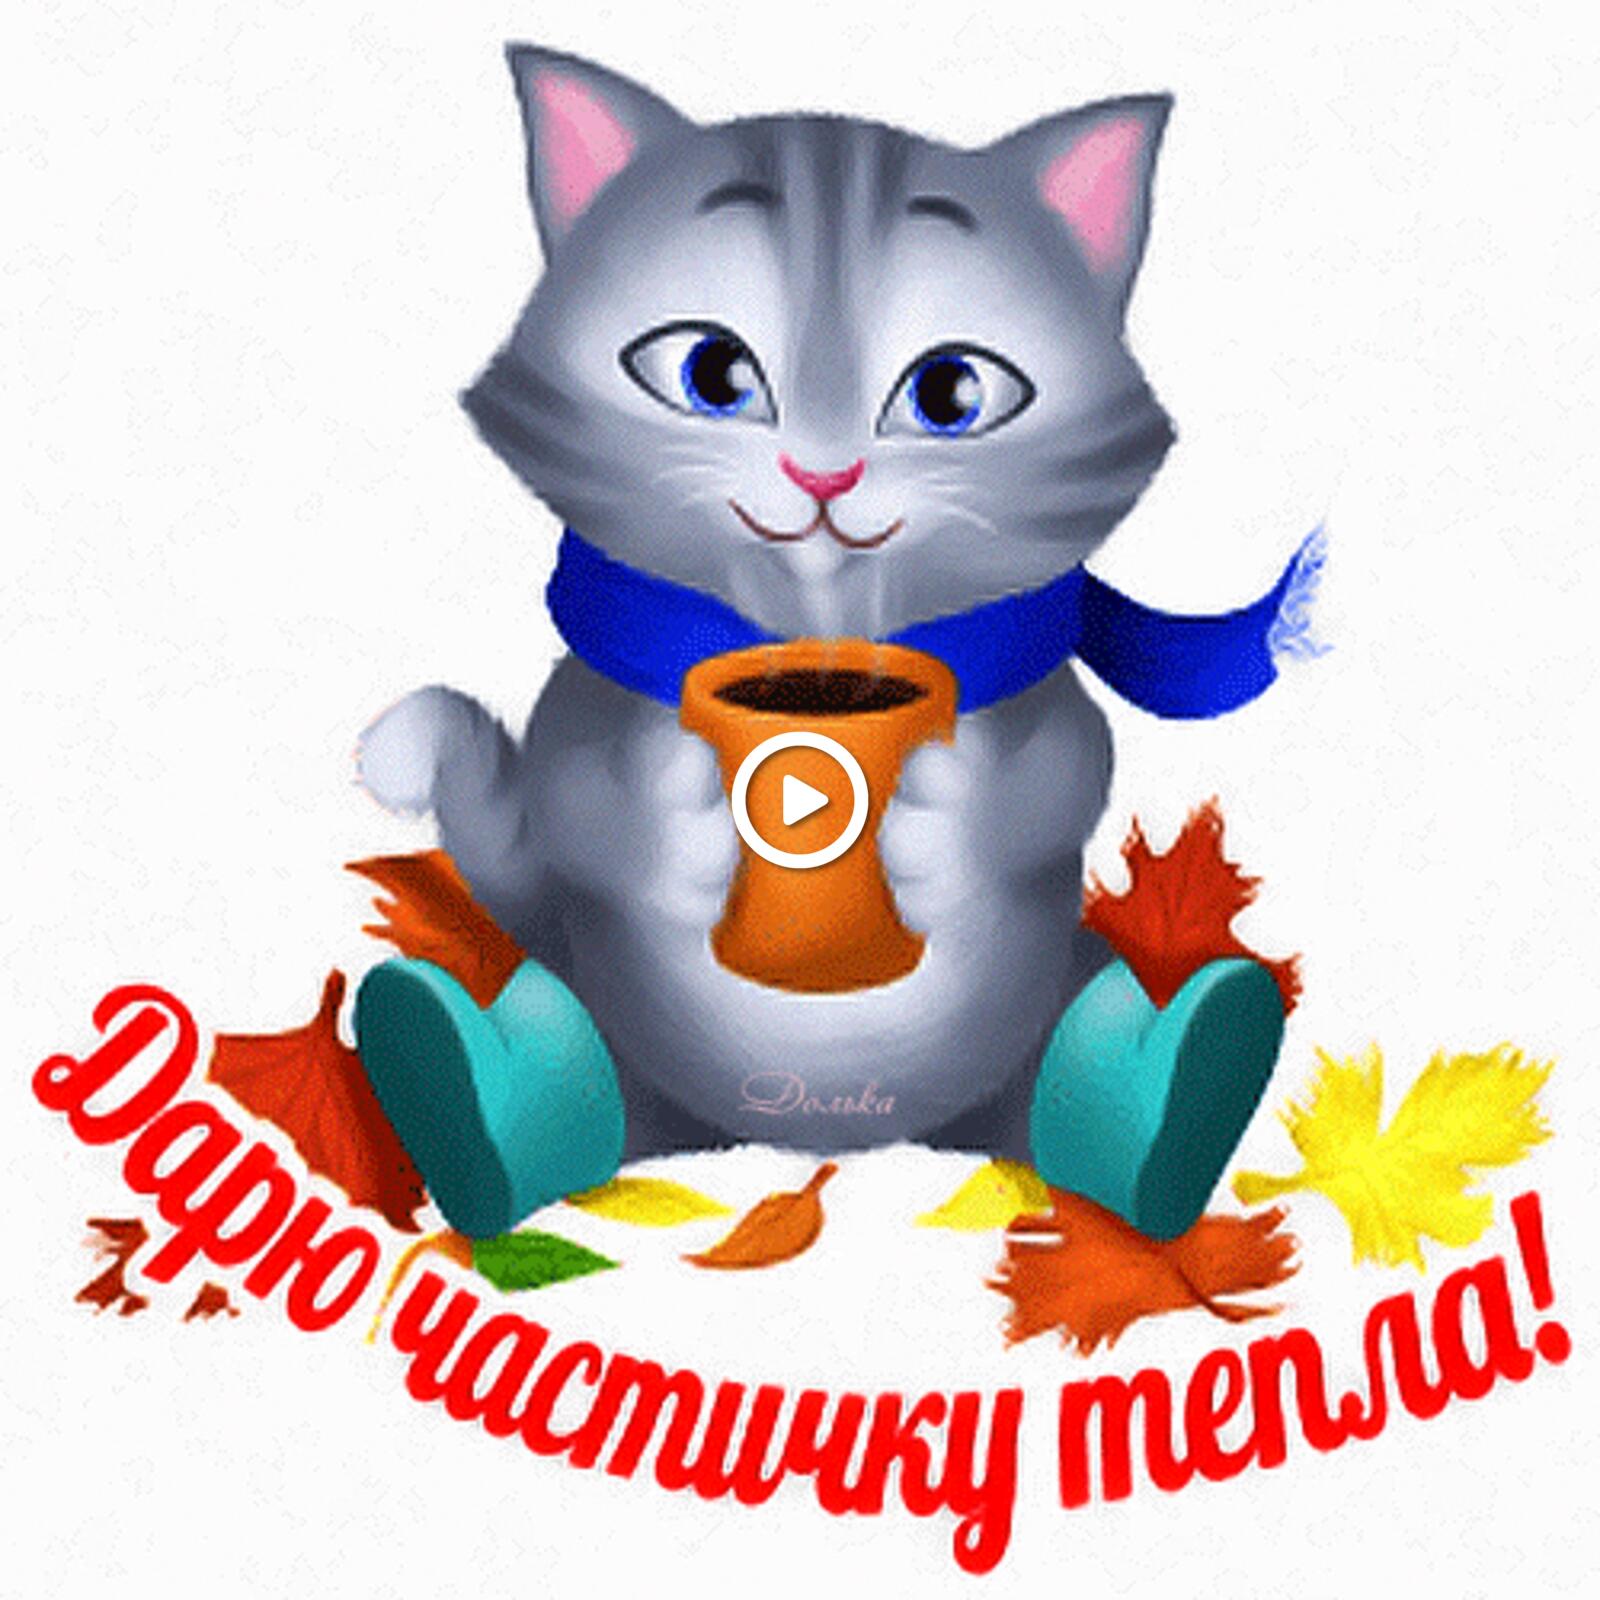 一张以我给你一片温暖 猫咪 秋季为主题的明信片